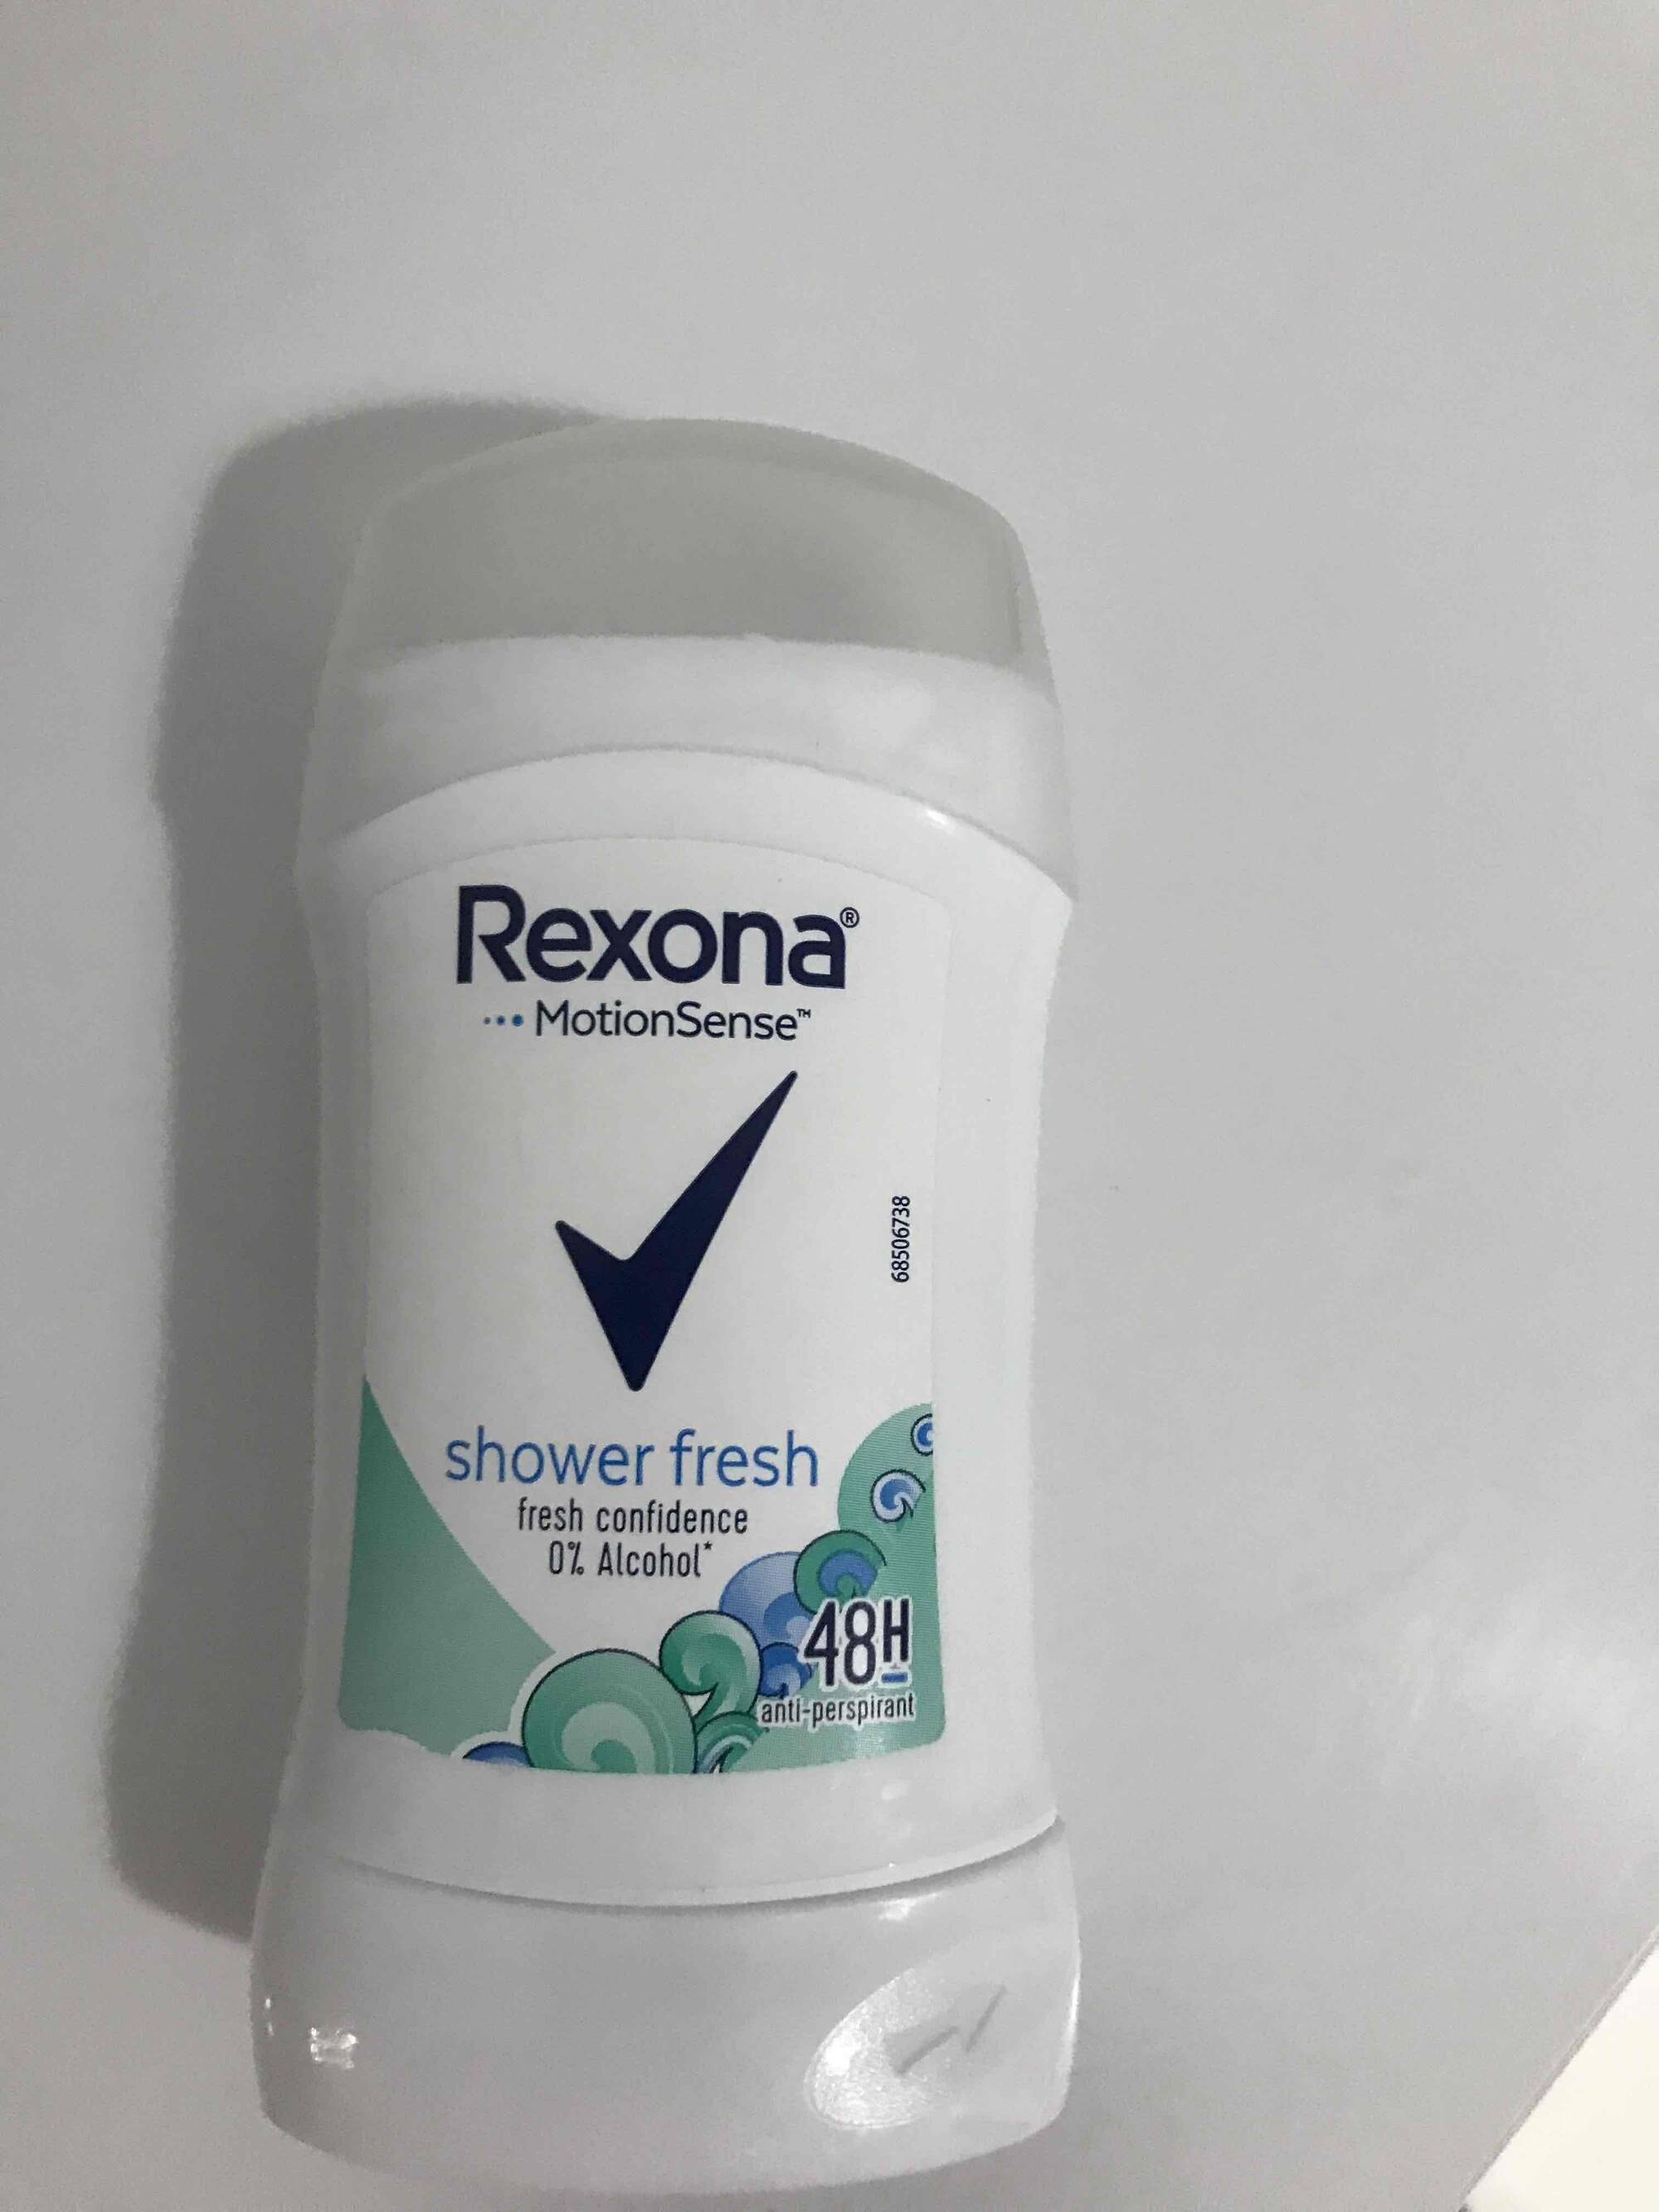 REXONA - Shower fresh